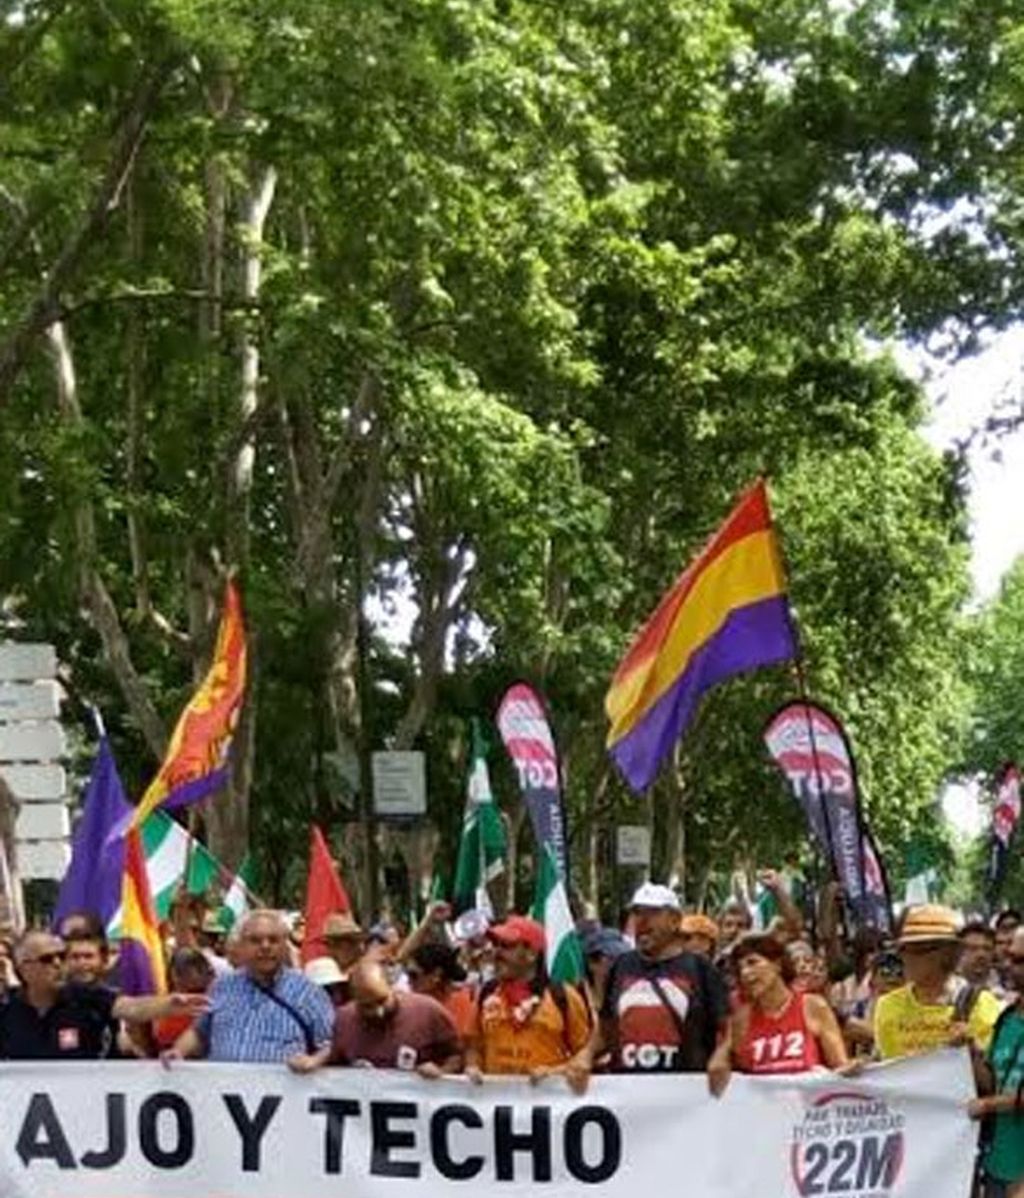 Miles de personas marchan contra el paro y la precariedad en Madrid